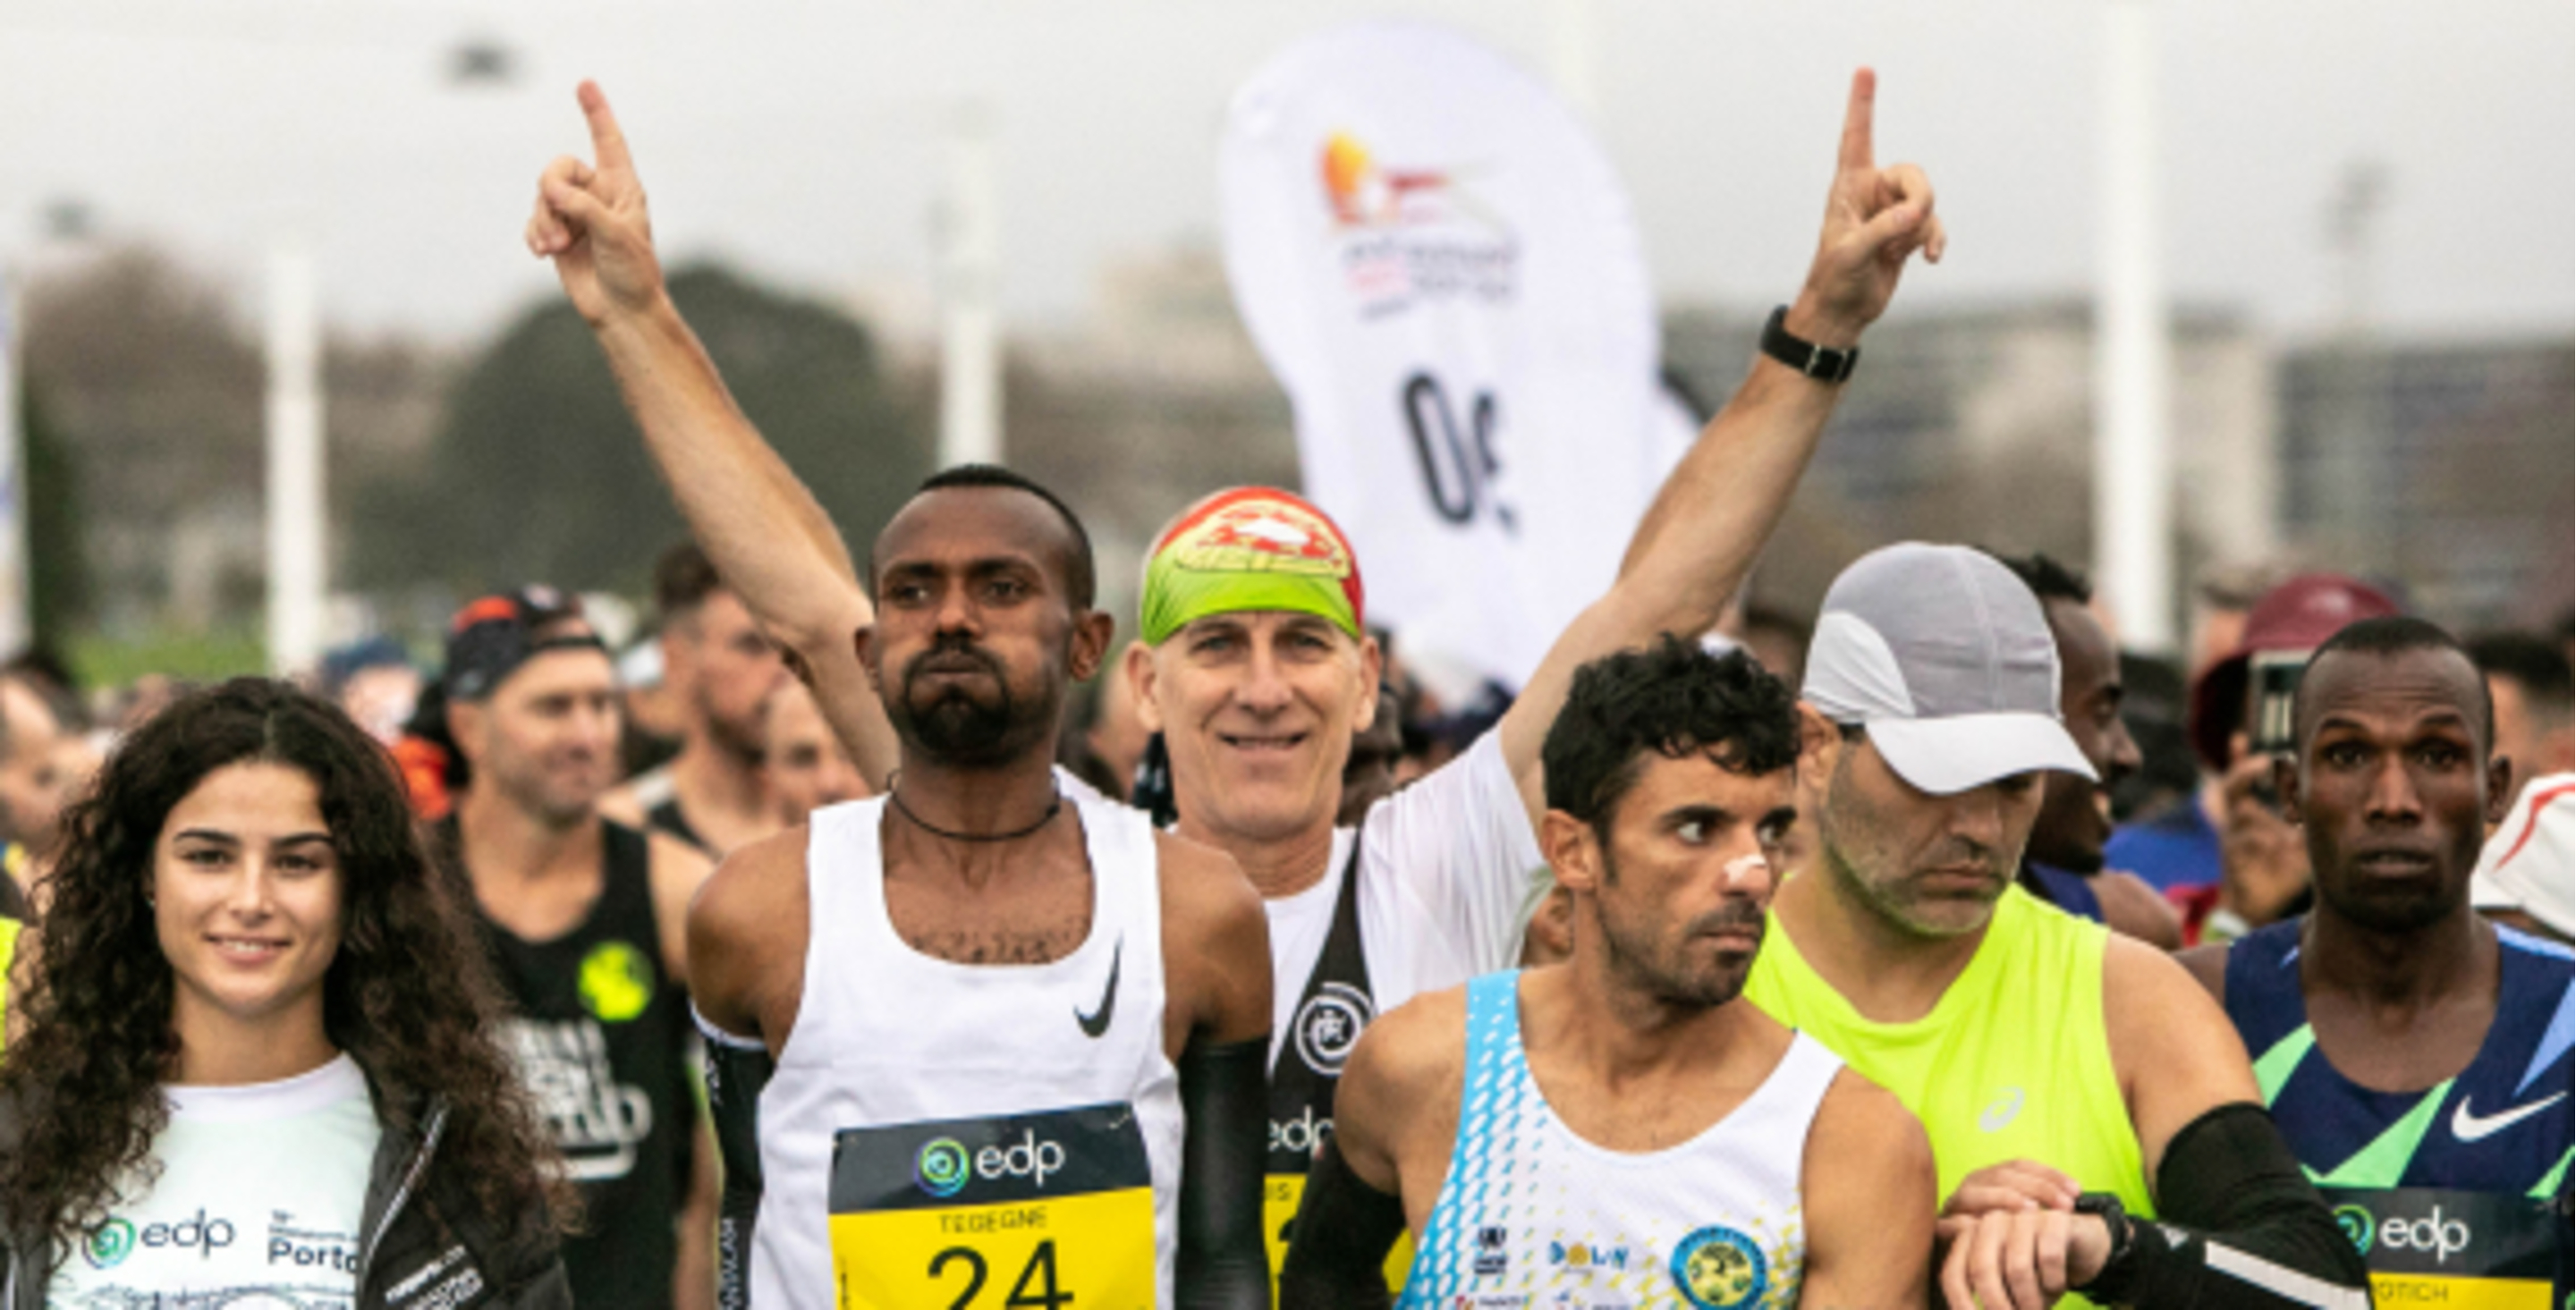 Ganha um dorsal e participa na Maratona do Porto